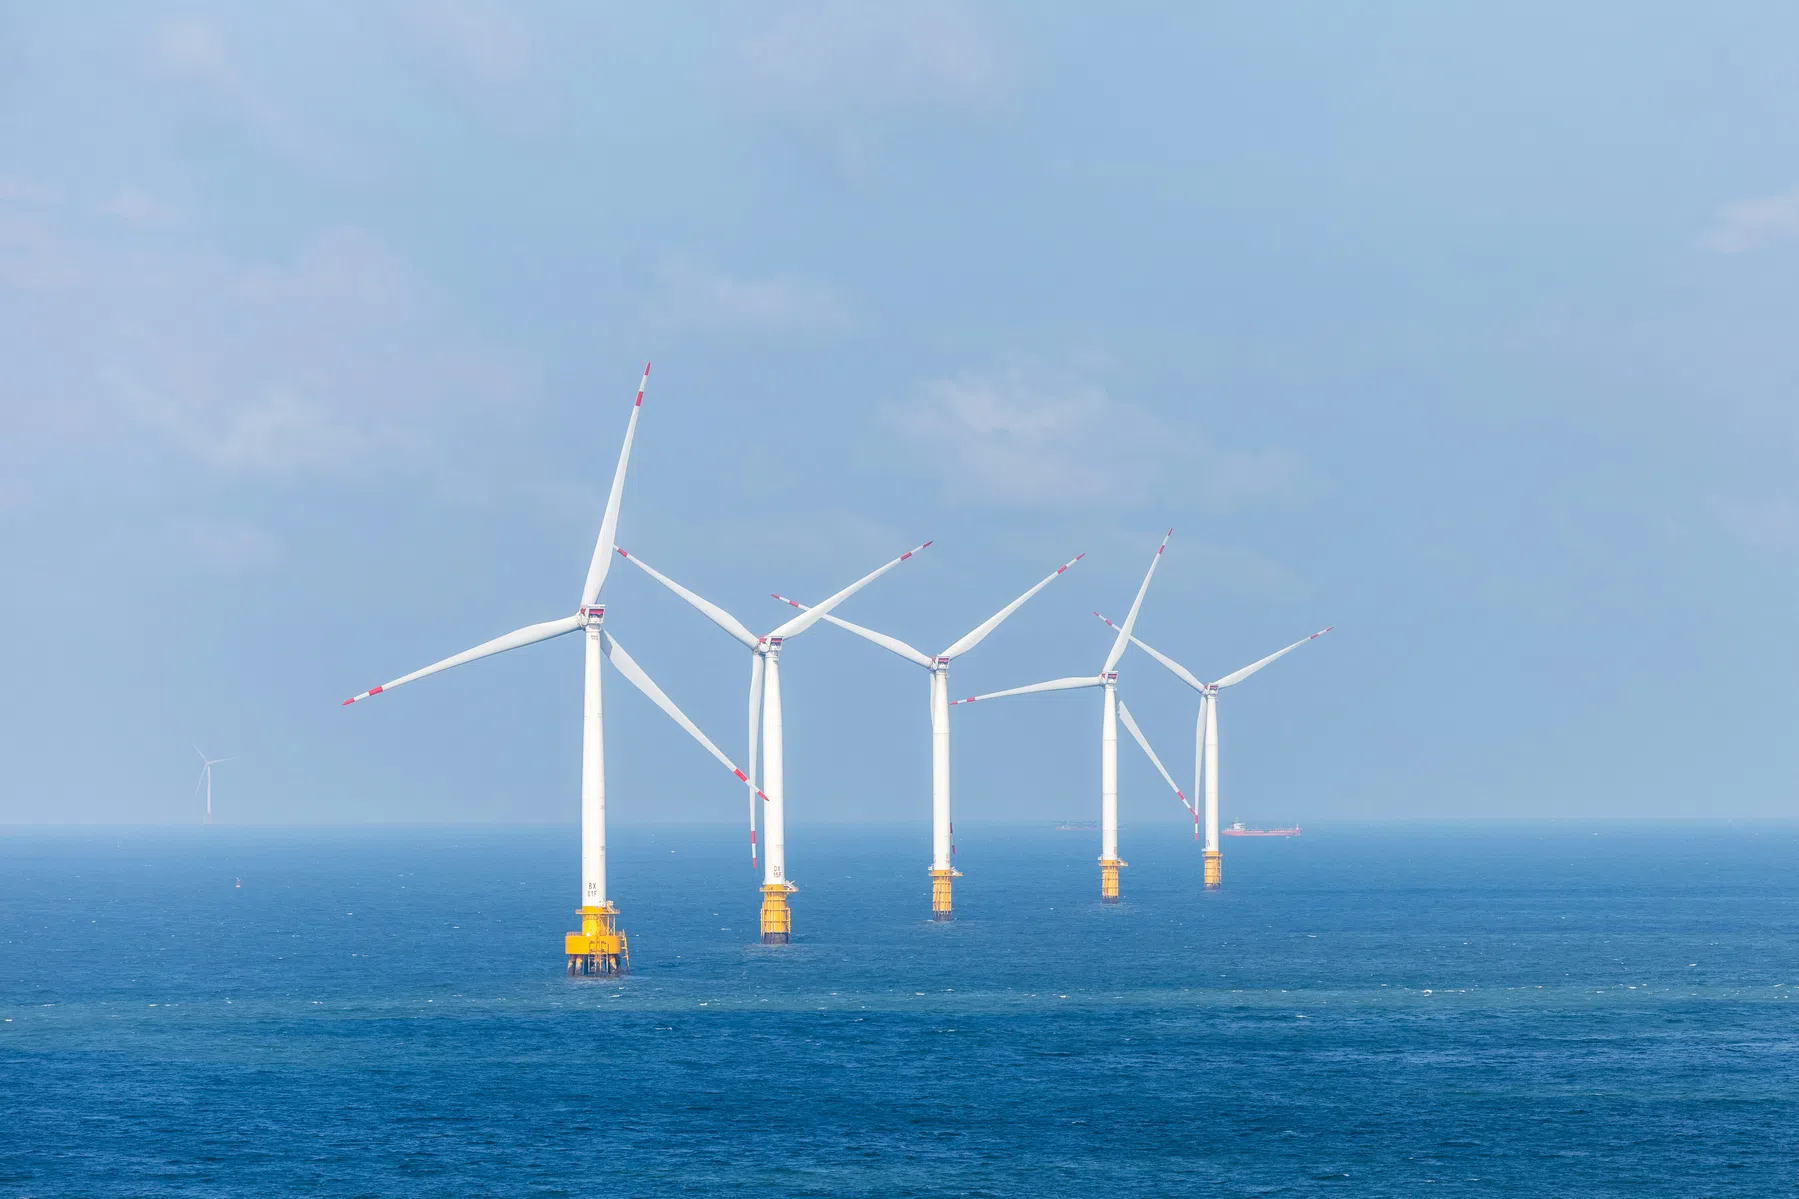 Deens bedrijf investeert 150 miljard in kunstmatige energie-eilanden in Noordzee